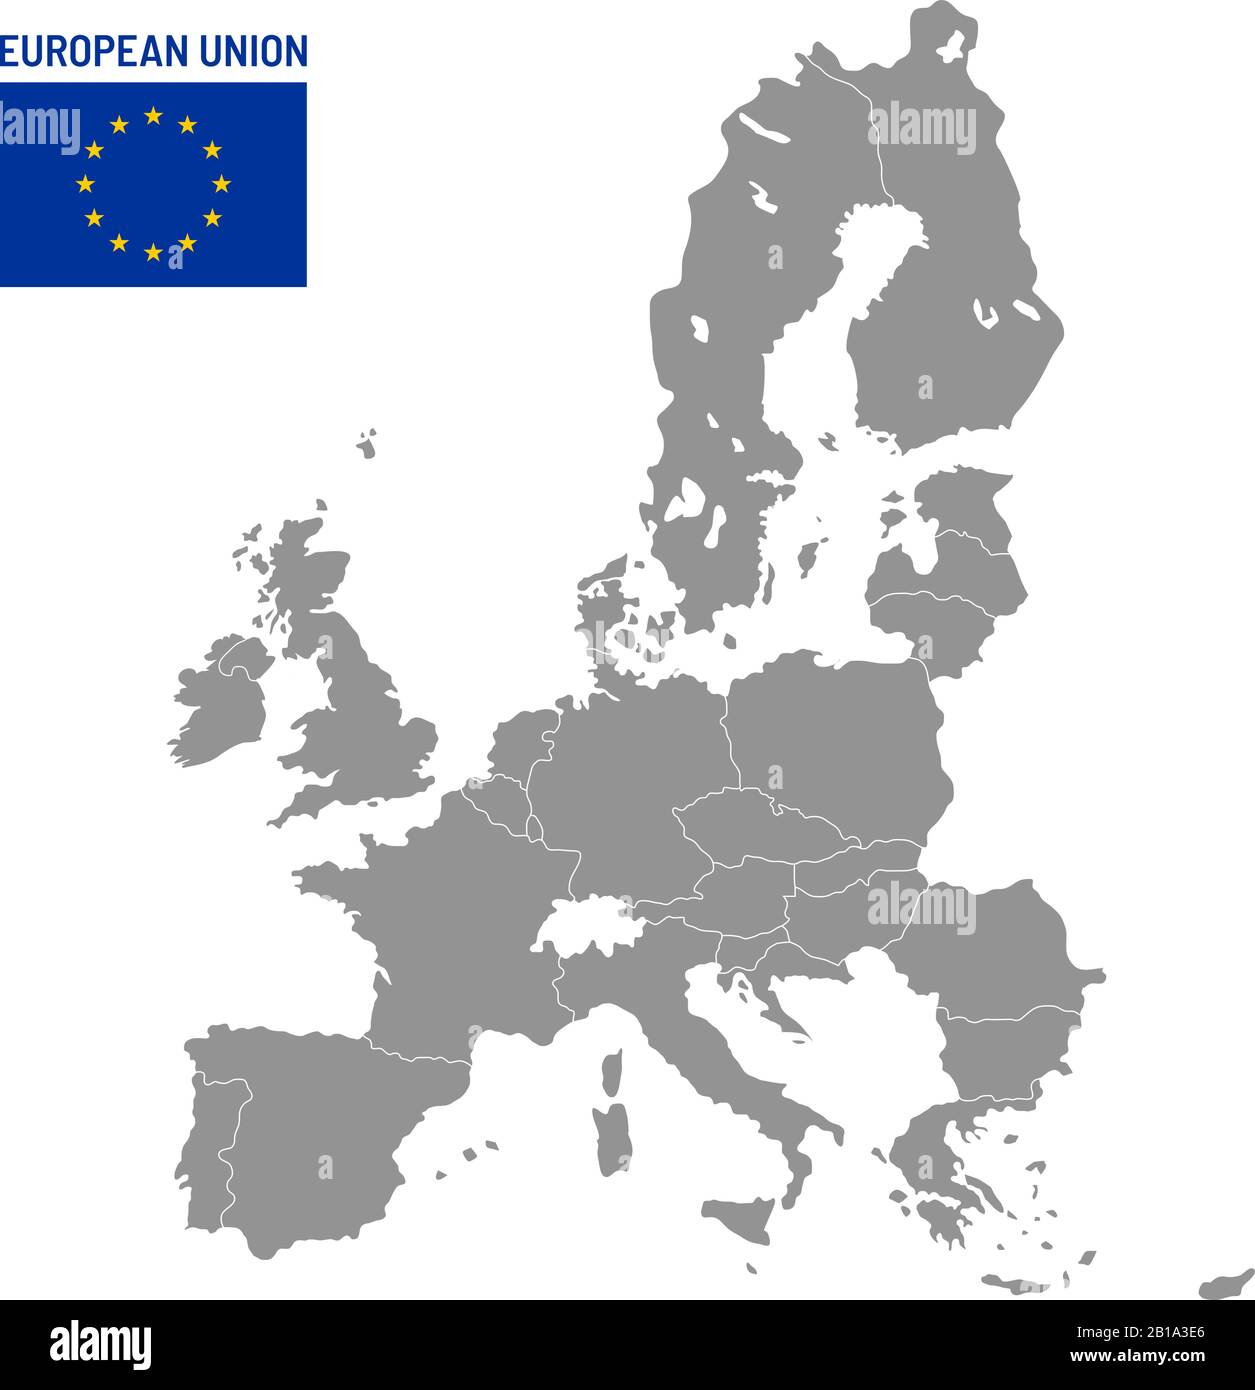 Karte der Europäischen Union. EU-Mitgliedsstaaten, europa Land Standort Karten Vektor Illustration Stock Vektor